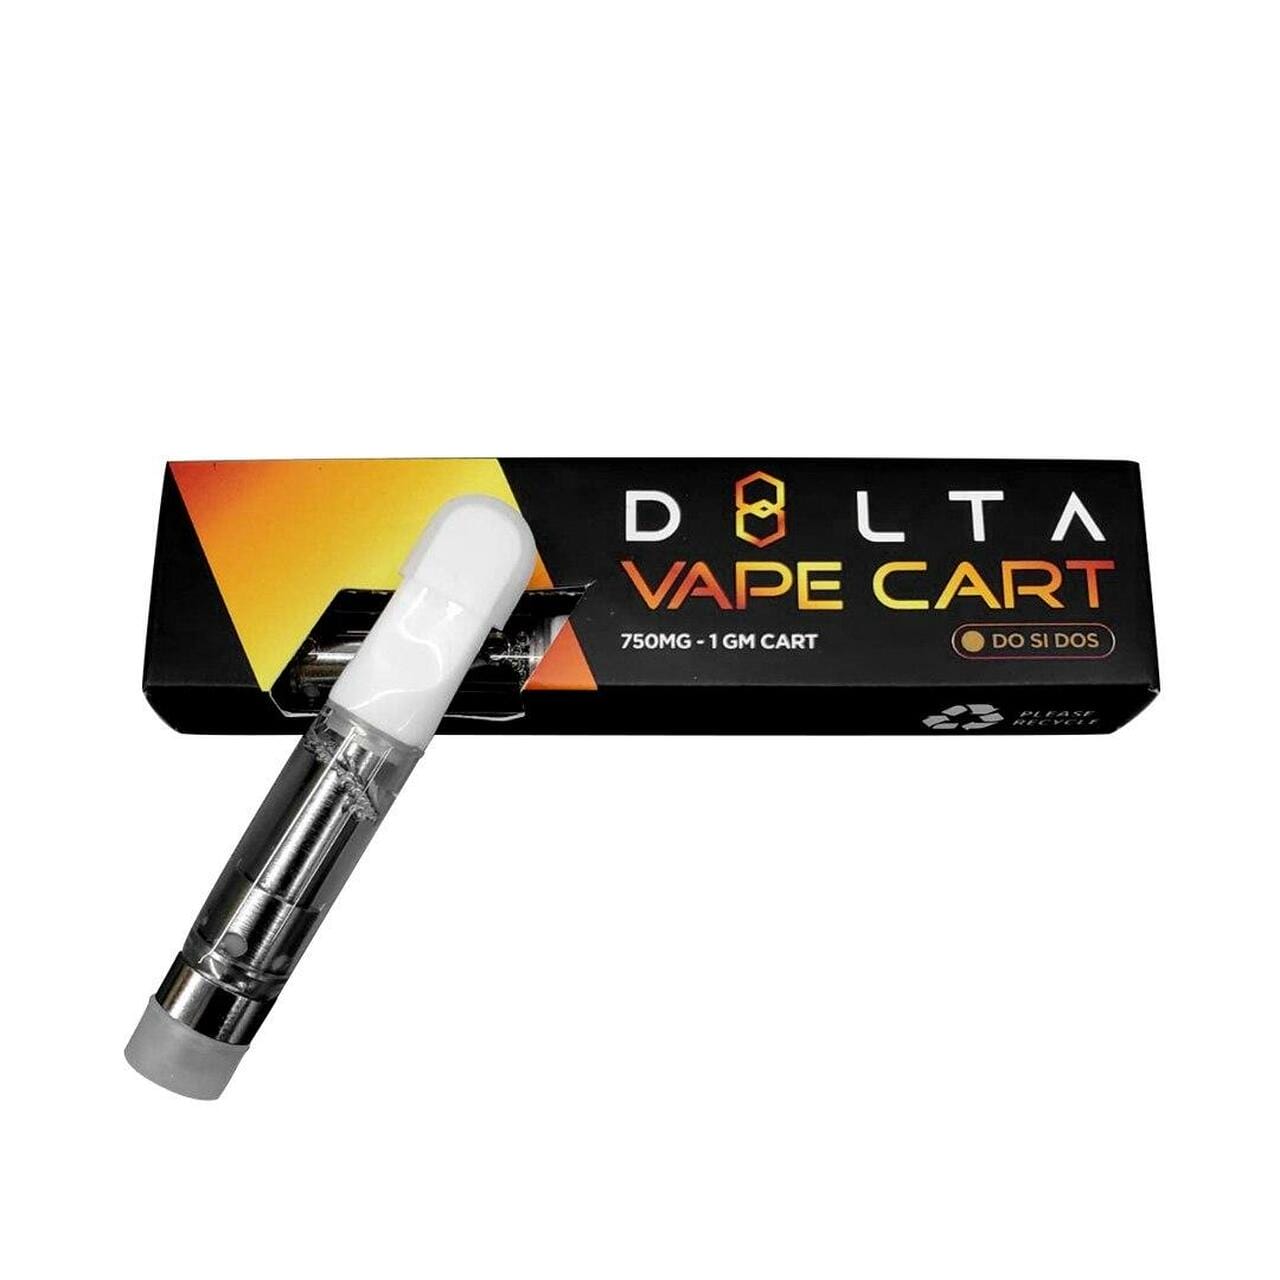 d8lta-delta-8-carts-flavored-vape-c-cell-delta-8-cart-750mg